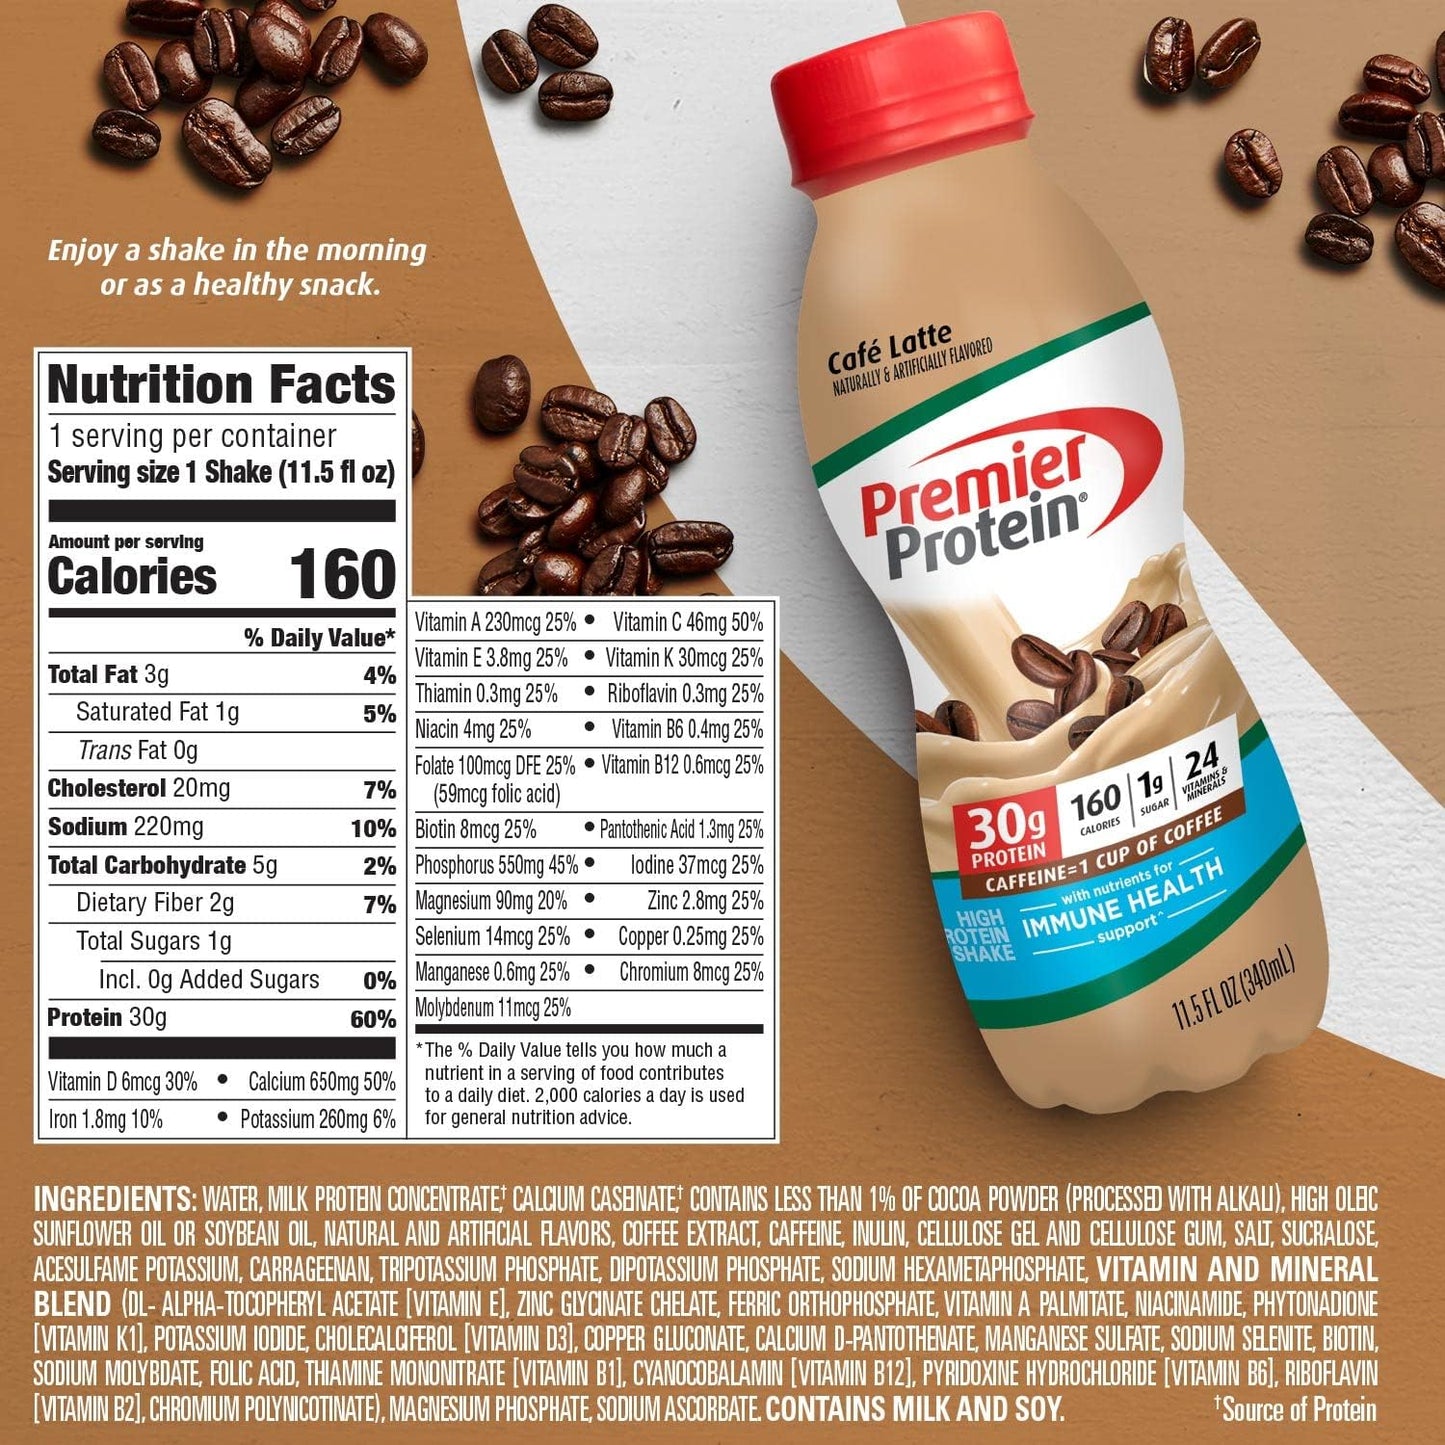 Premier Protein Shake, Café Latte Liquid, 30g Protein, 1g Sugar, 24 Vitamins & Minerals, Nutrients to Support Immune Health, gluten free, 11.5 fl oz Bottle, 12 Pack